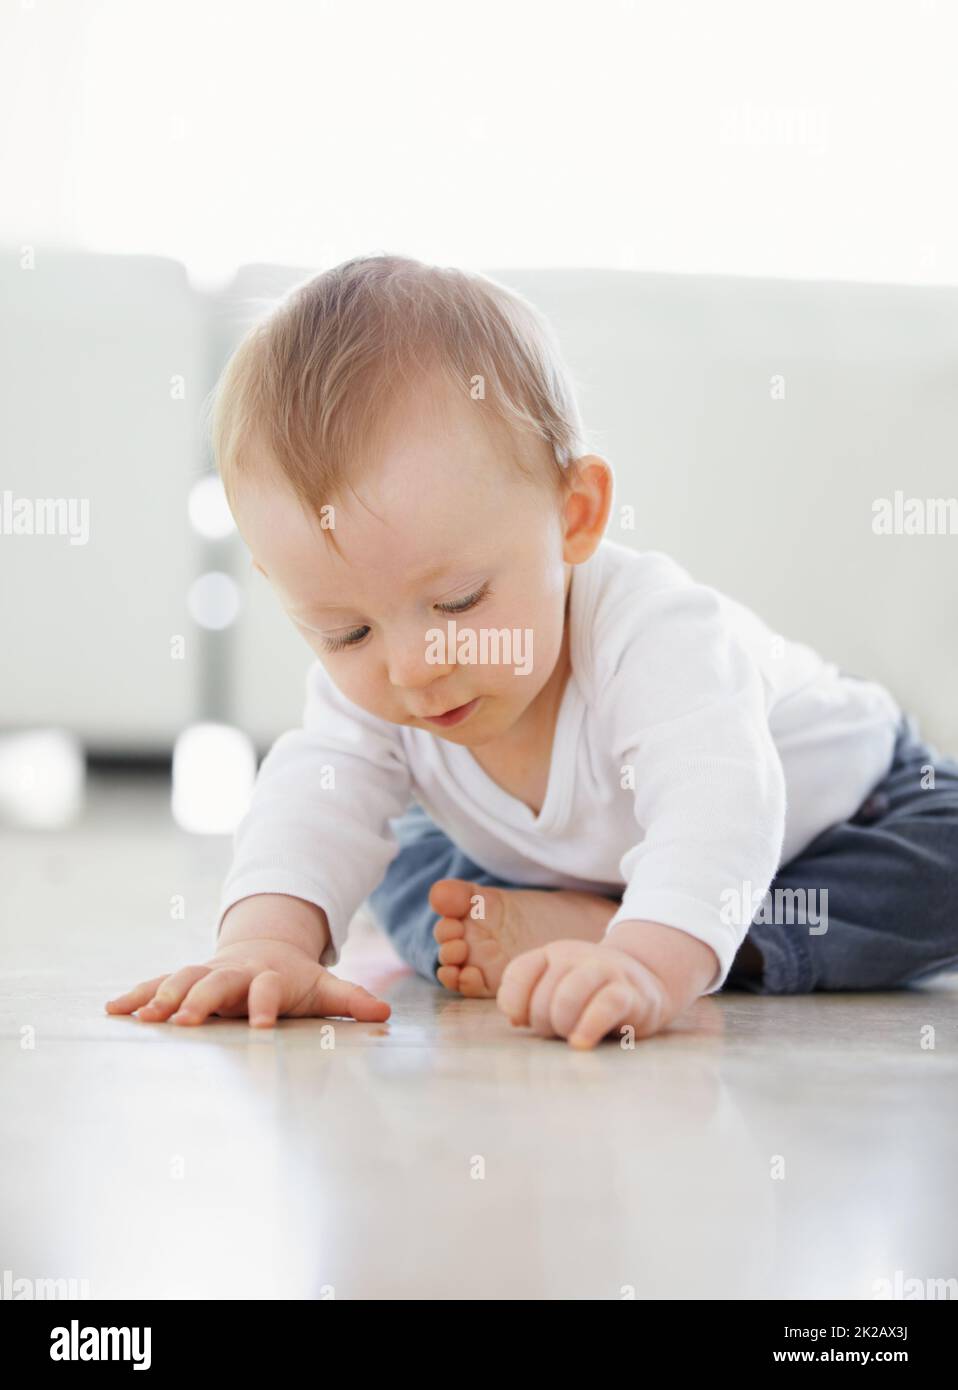 Che cosa è questo. Scatto di un bambino carino che gioca mentre si siede sul pavimento. Foto Stock